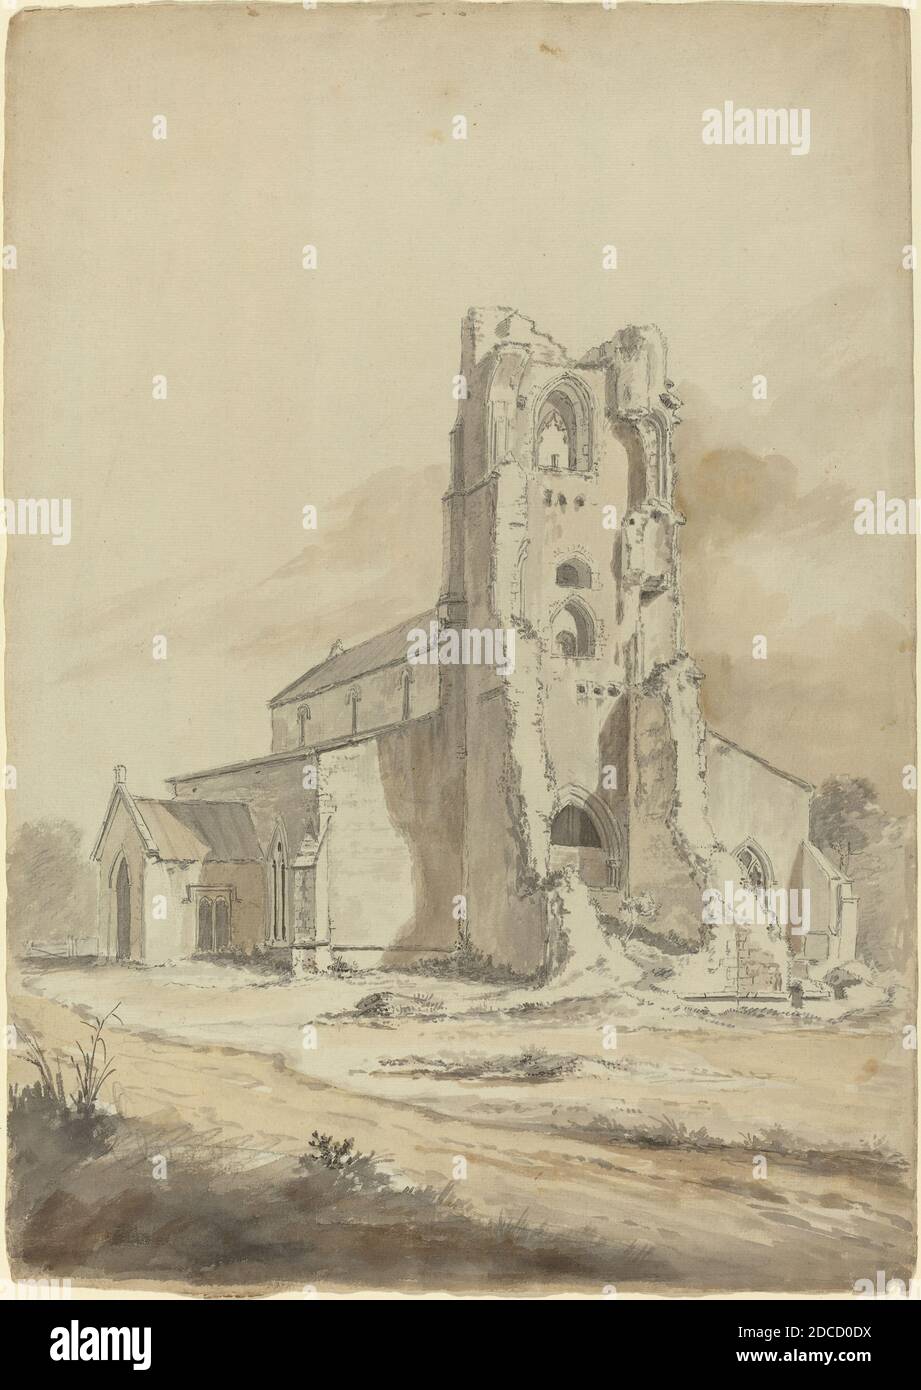 Hendrik Frans de Cort, (artista), flamenco, 1742 - 1810, Iglesia arruinada, probablemente 1794, grafito con lavado gris y marrón sobre papel colocado, total (aproximado): 49.2 x 33.7 cm (19 3/8 x 13 1/4 pulg Foto de stock